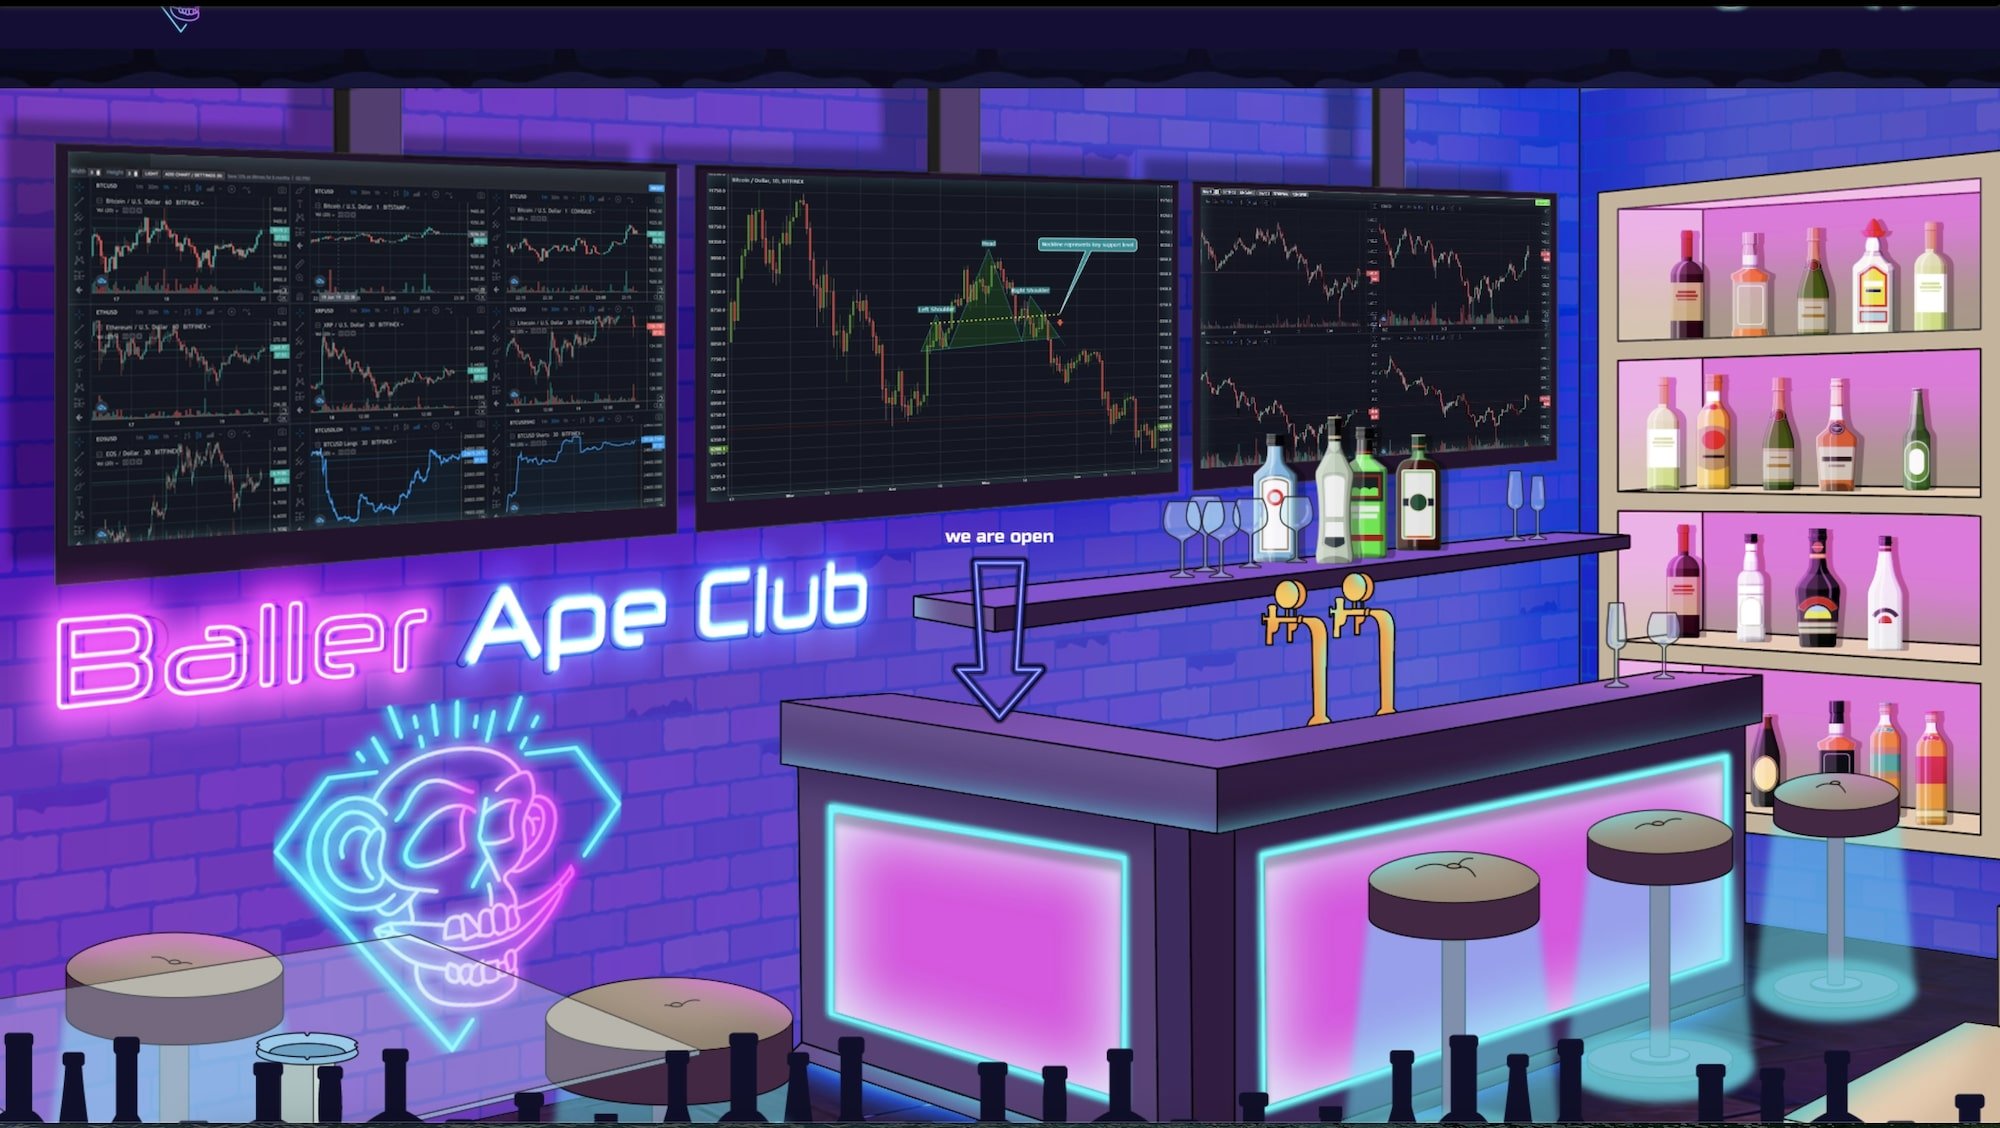 the Baller Apes Club virtual bar